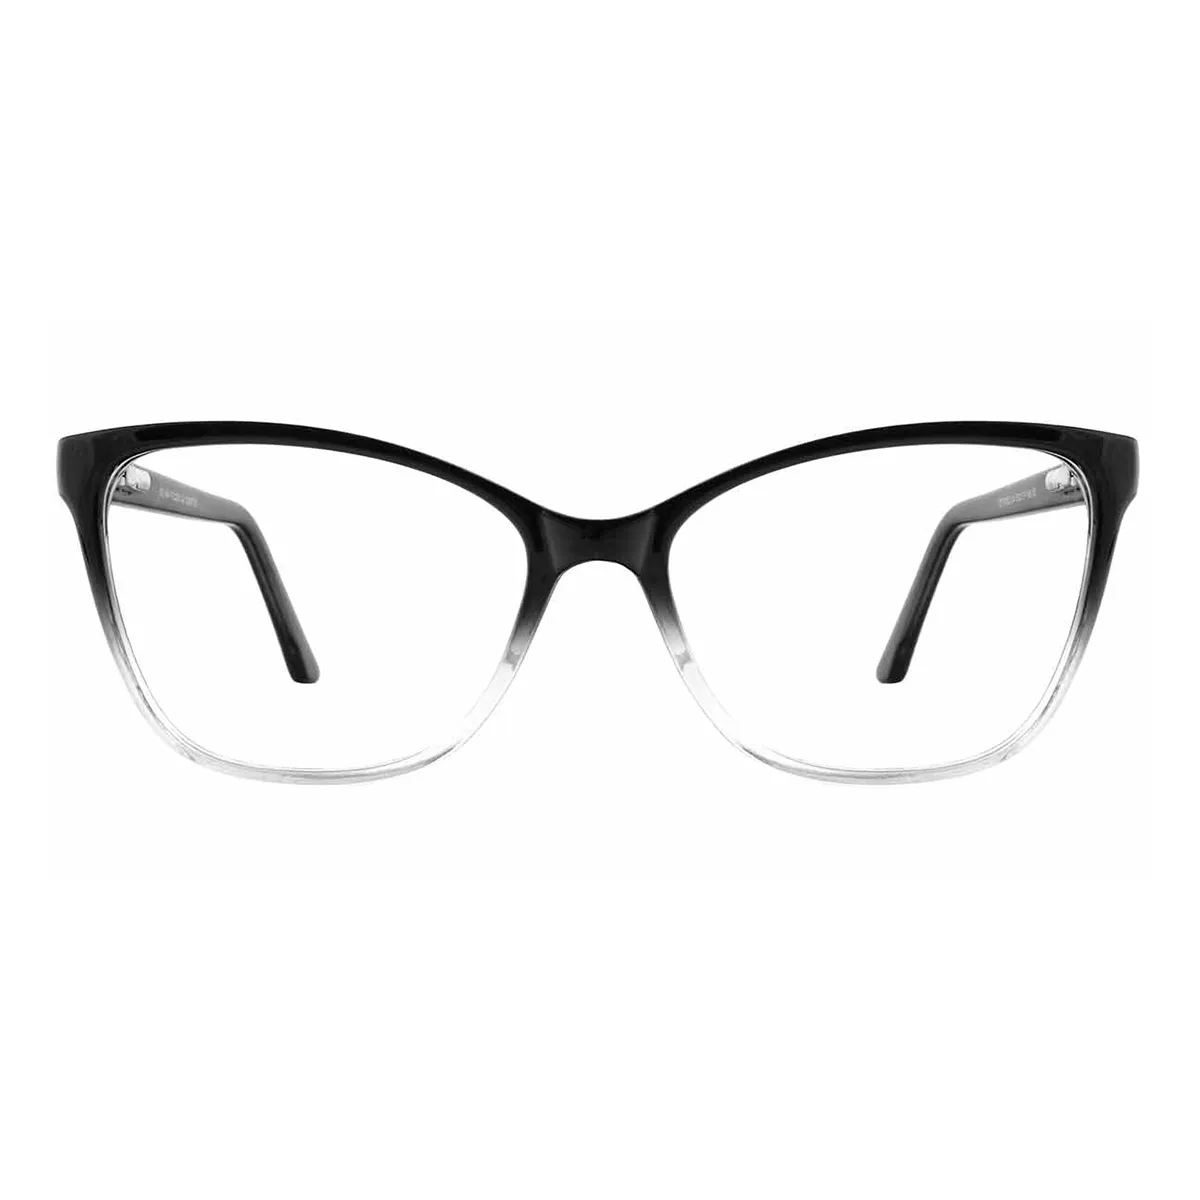 Business Cat-eye Black  Reading Glasses for Women